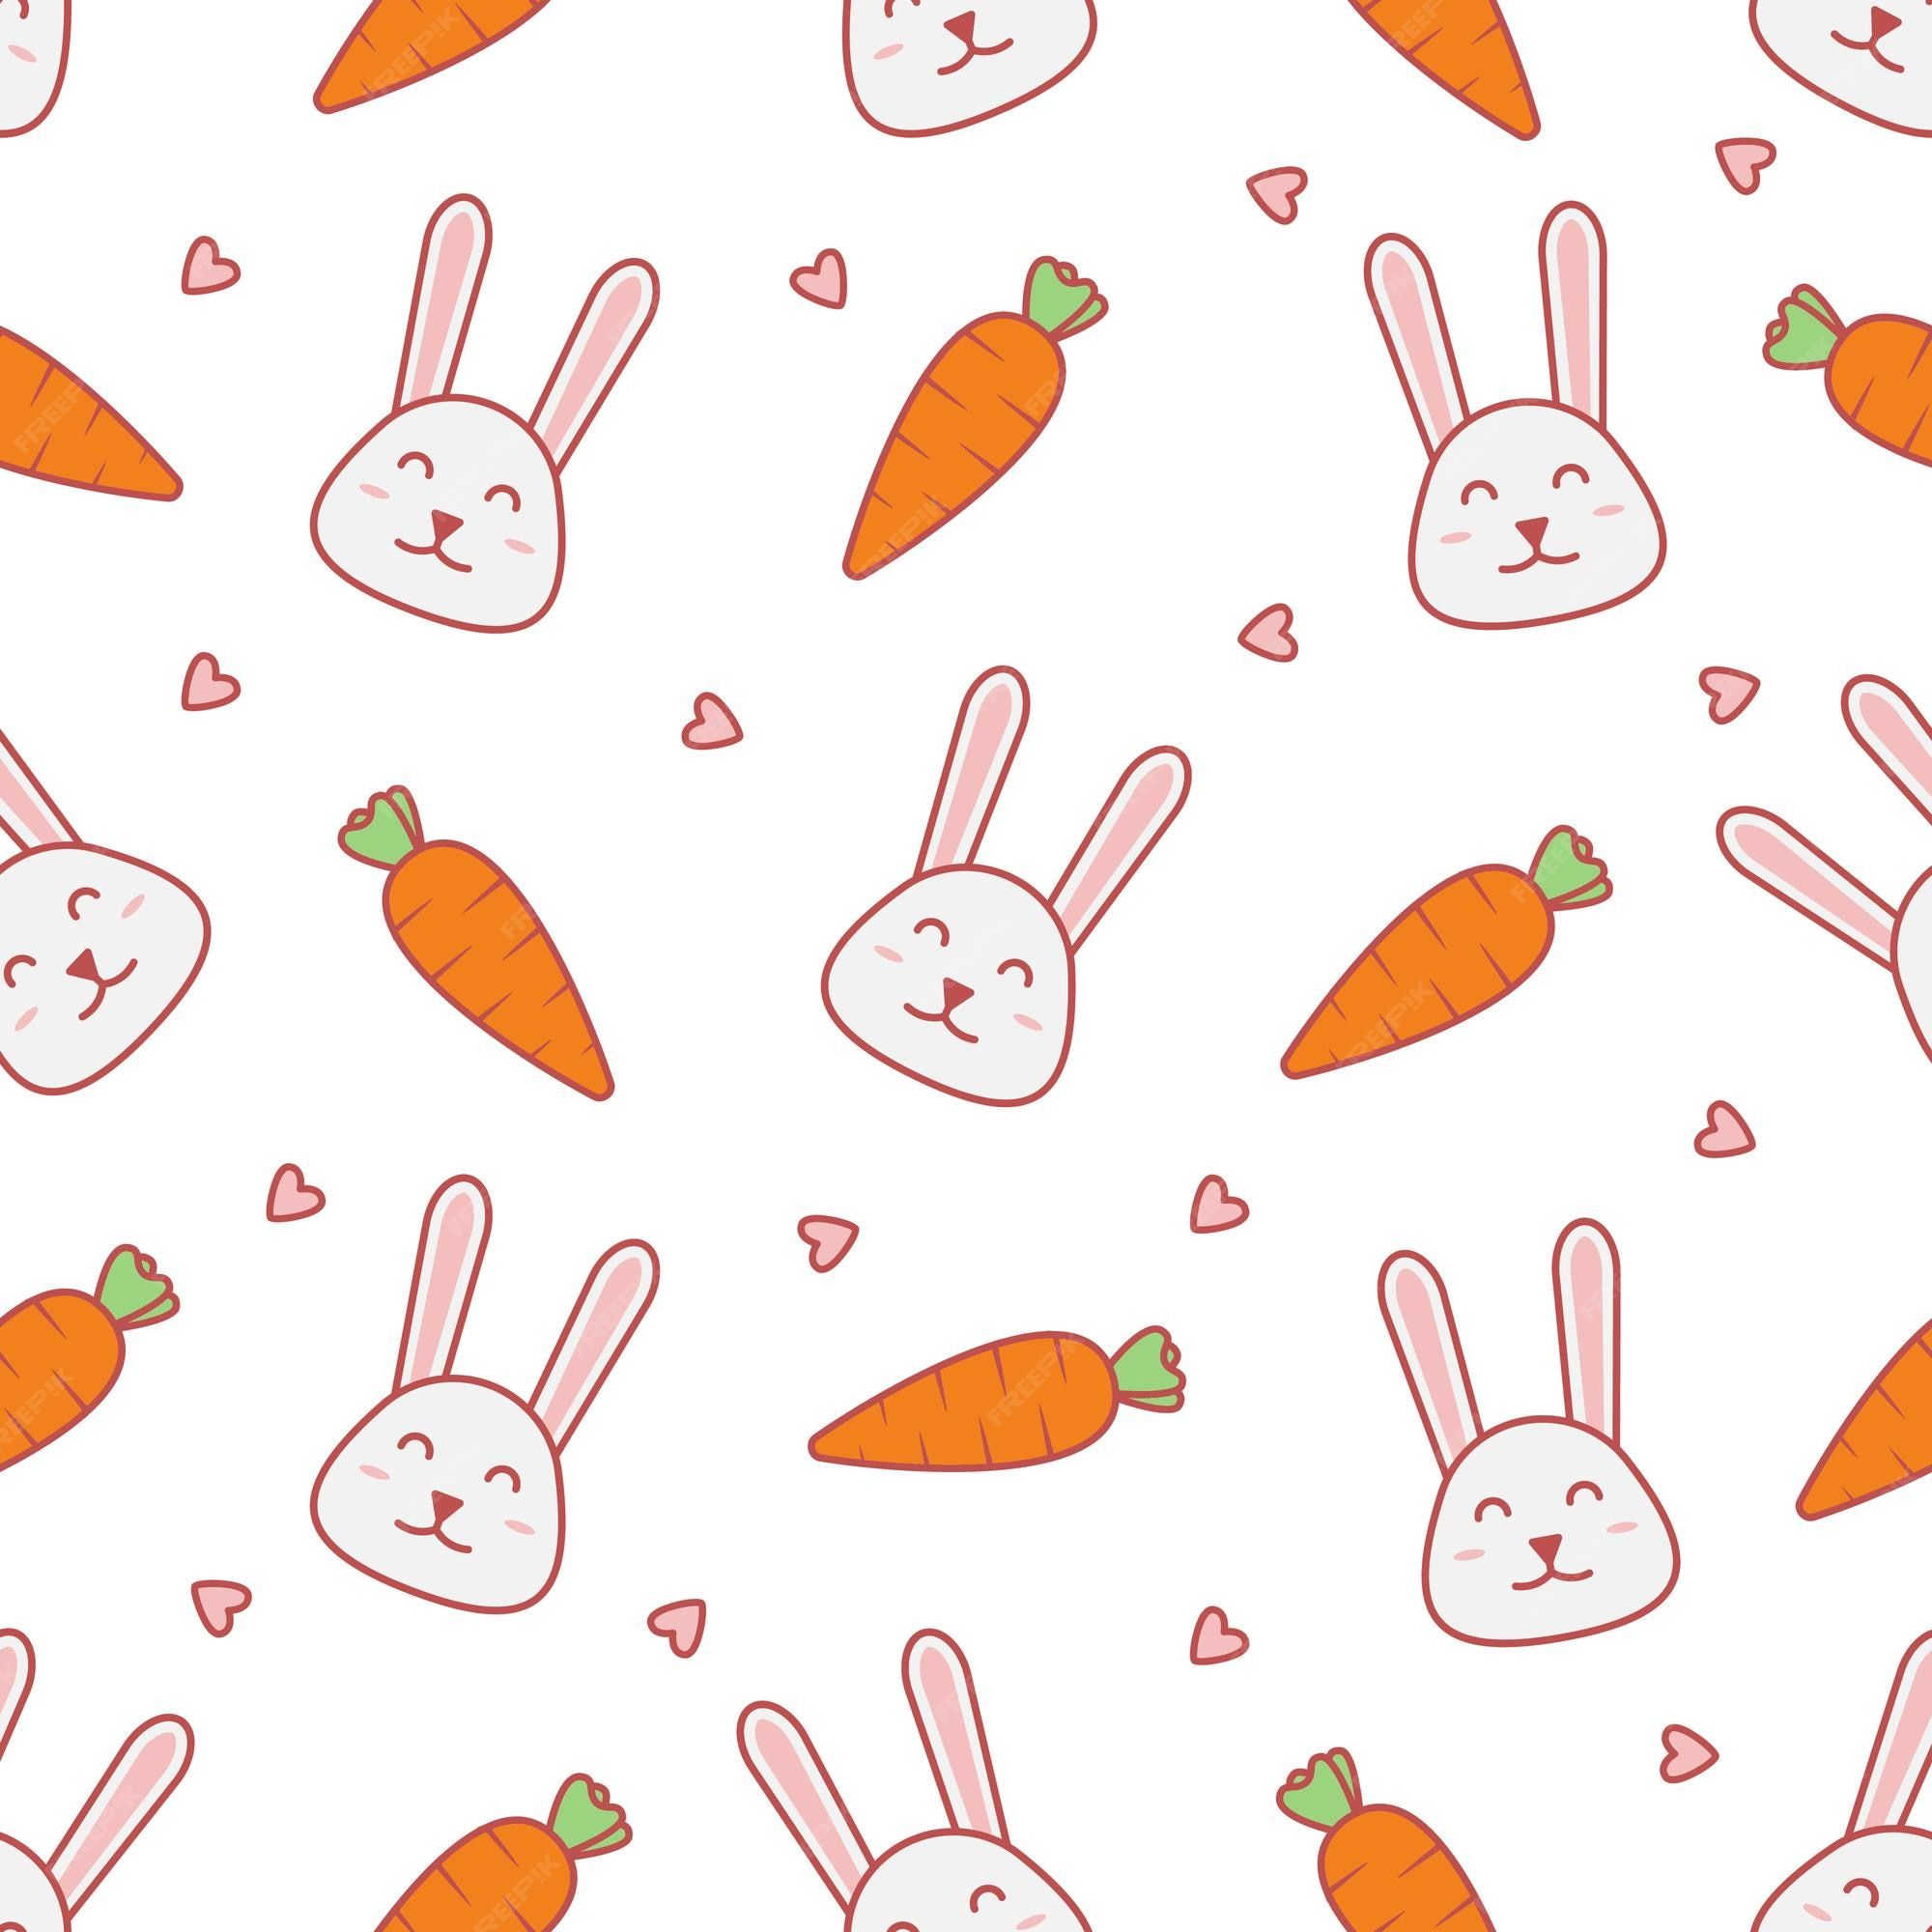  Kaninchen Hintergrundbild 2000x2000. Entzückendes, niedliches kaninchen- und karottenmuster mit nahtlosem vektordesign, das für kinderhemden oder süßes und entzückendes geschenkpapier verwendet werden kann